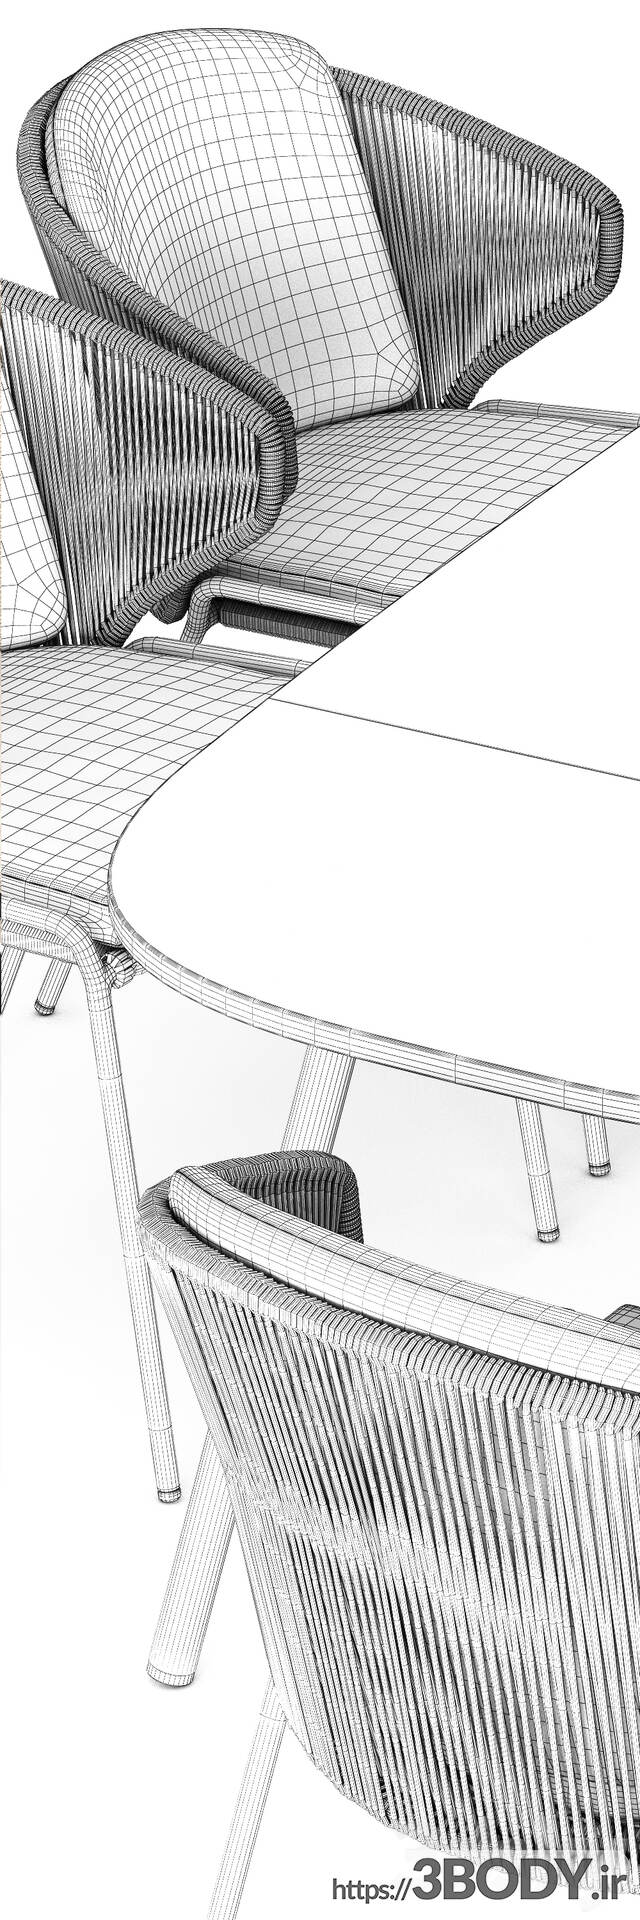 آبجکت سه بعدی ست میز و صندلی عکس 2